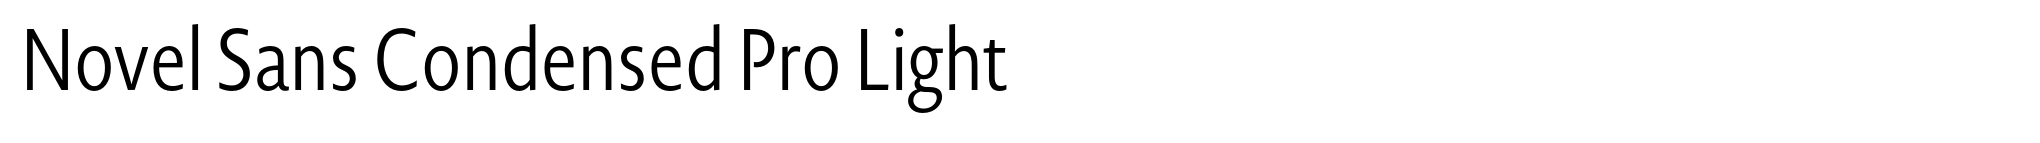 Novel Sans Condensed Pro Light image